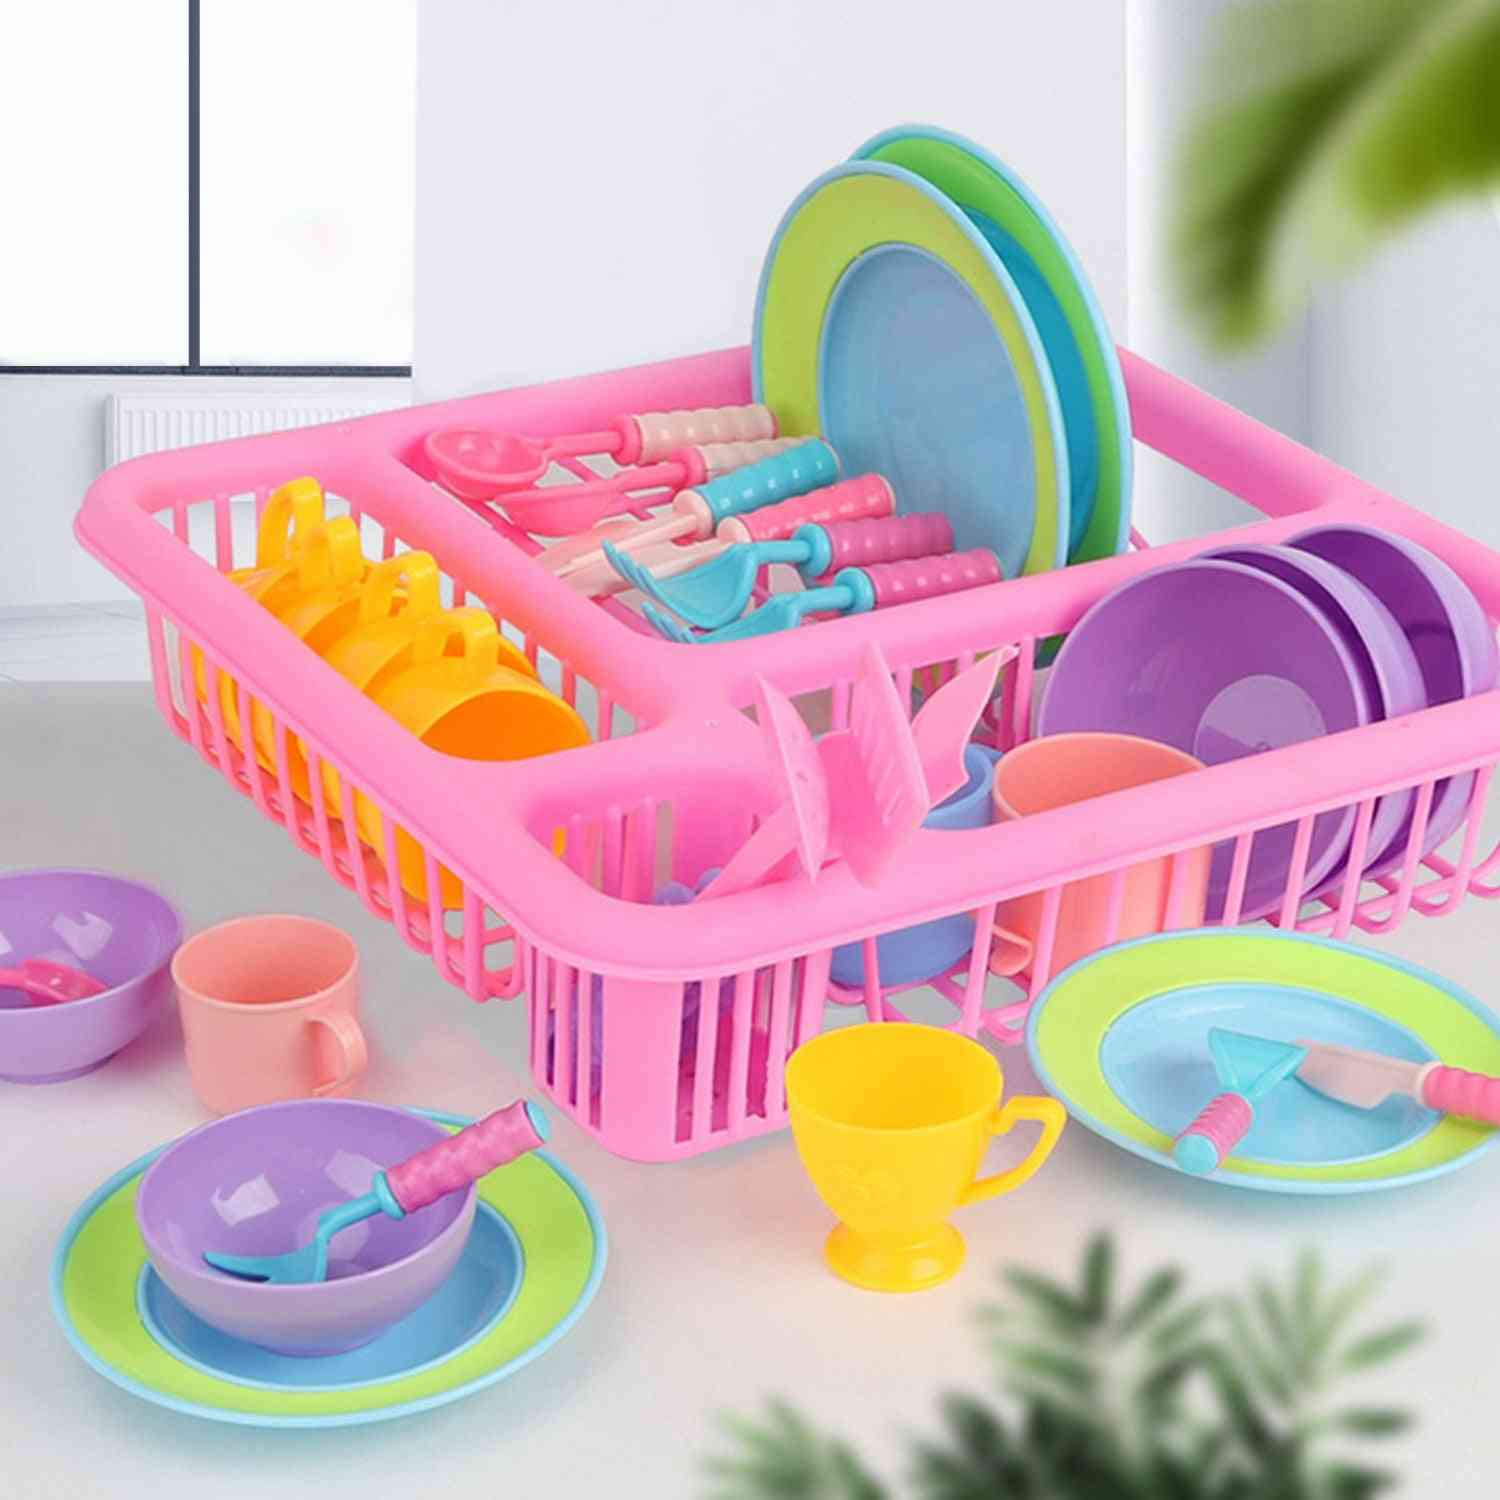 Vajilla platos platos / cuencos / tazas / cuchillo / tenedor cuchara / utensilios de cocina escurridor de cocina / cocina estante seco herramienta de juguete para niños